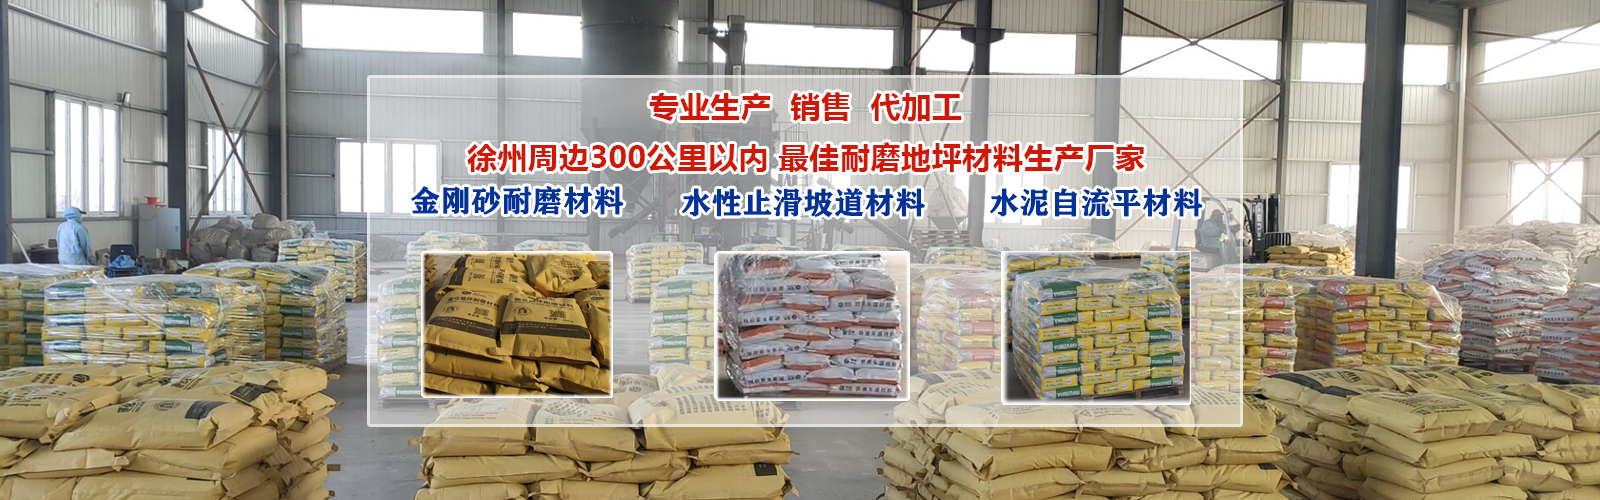 徐州周边300公里以内 最佳耐磨地坪材料生产厂家 专业生产  销售  代加工   